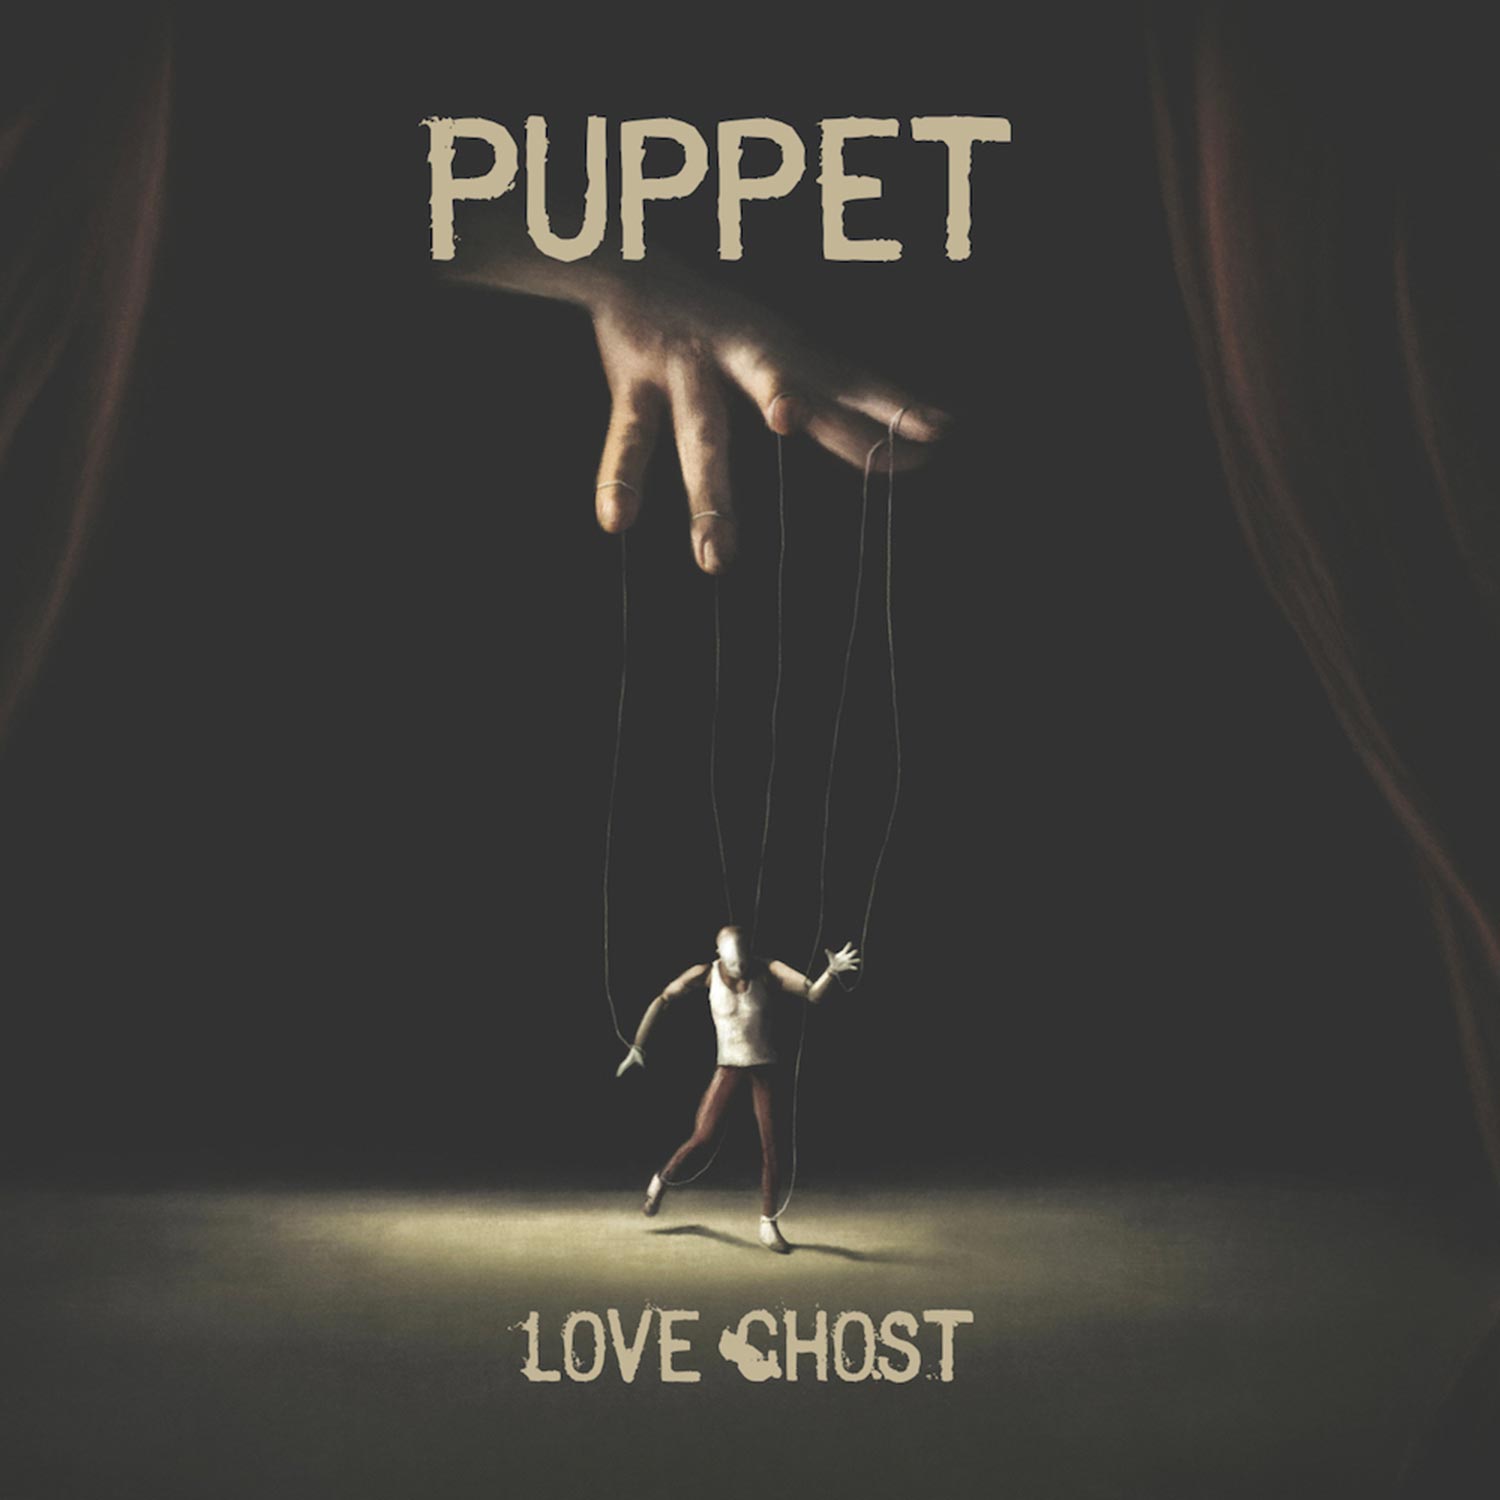 Love ghost, pubblicato il nuovo singolo “Puppet”